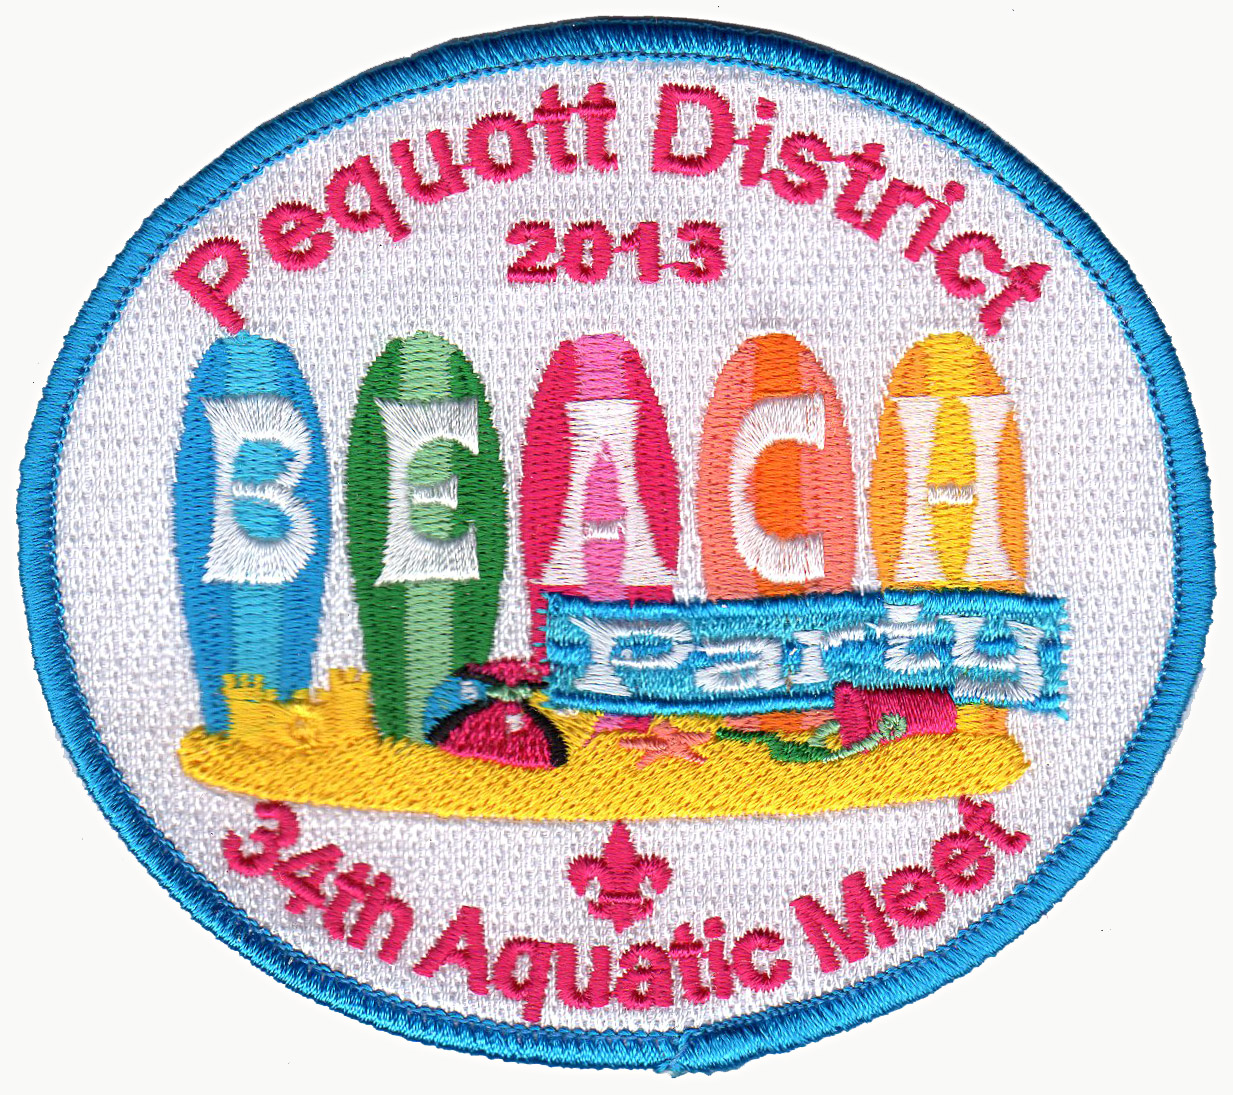 Pequott Aquatic Meet 2013